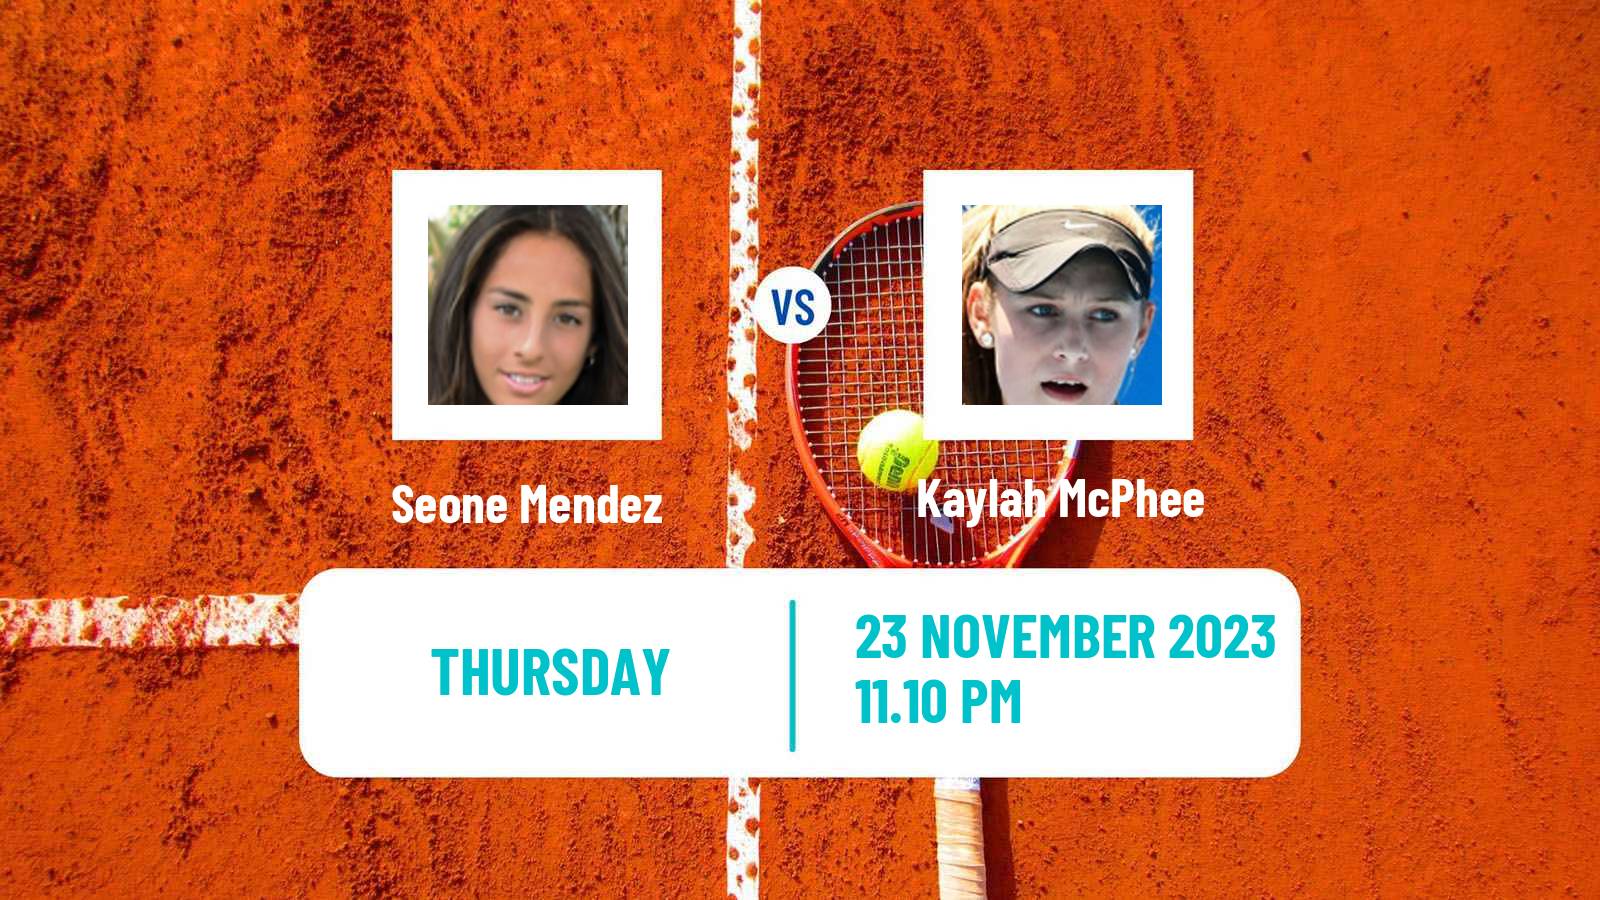 Tennis ITF W60 Brisbane Women Seone Mendez - Kaylah McPhee